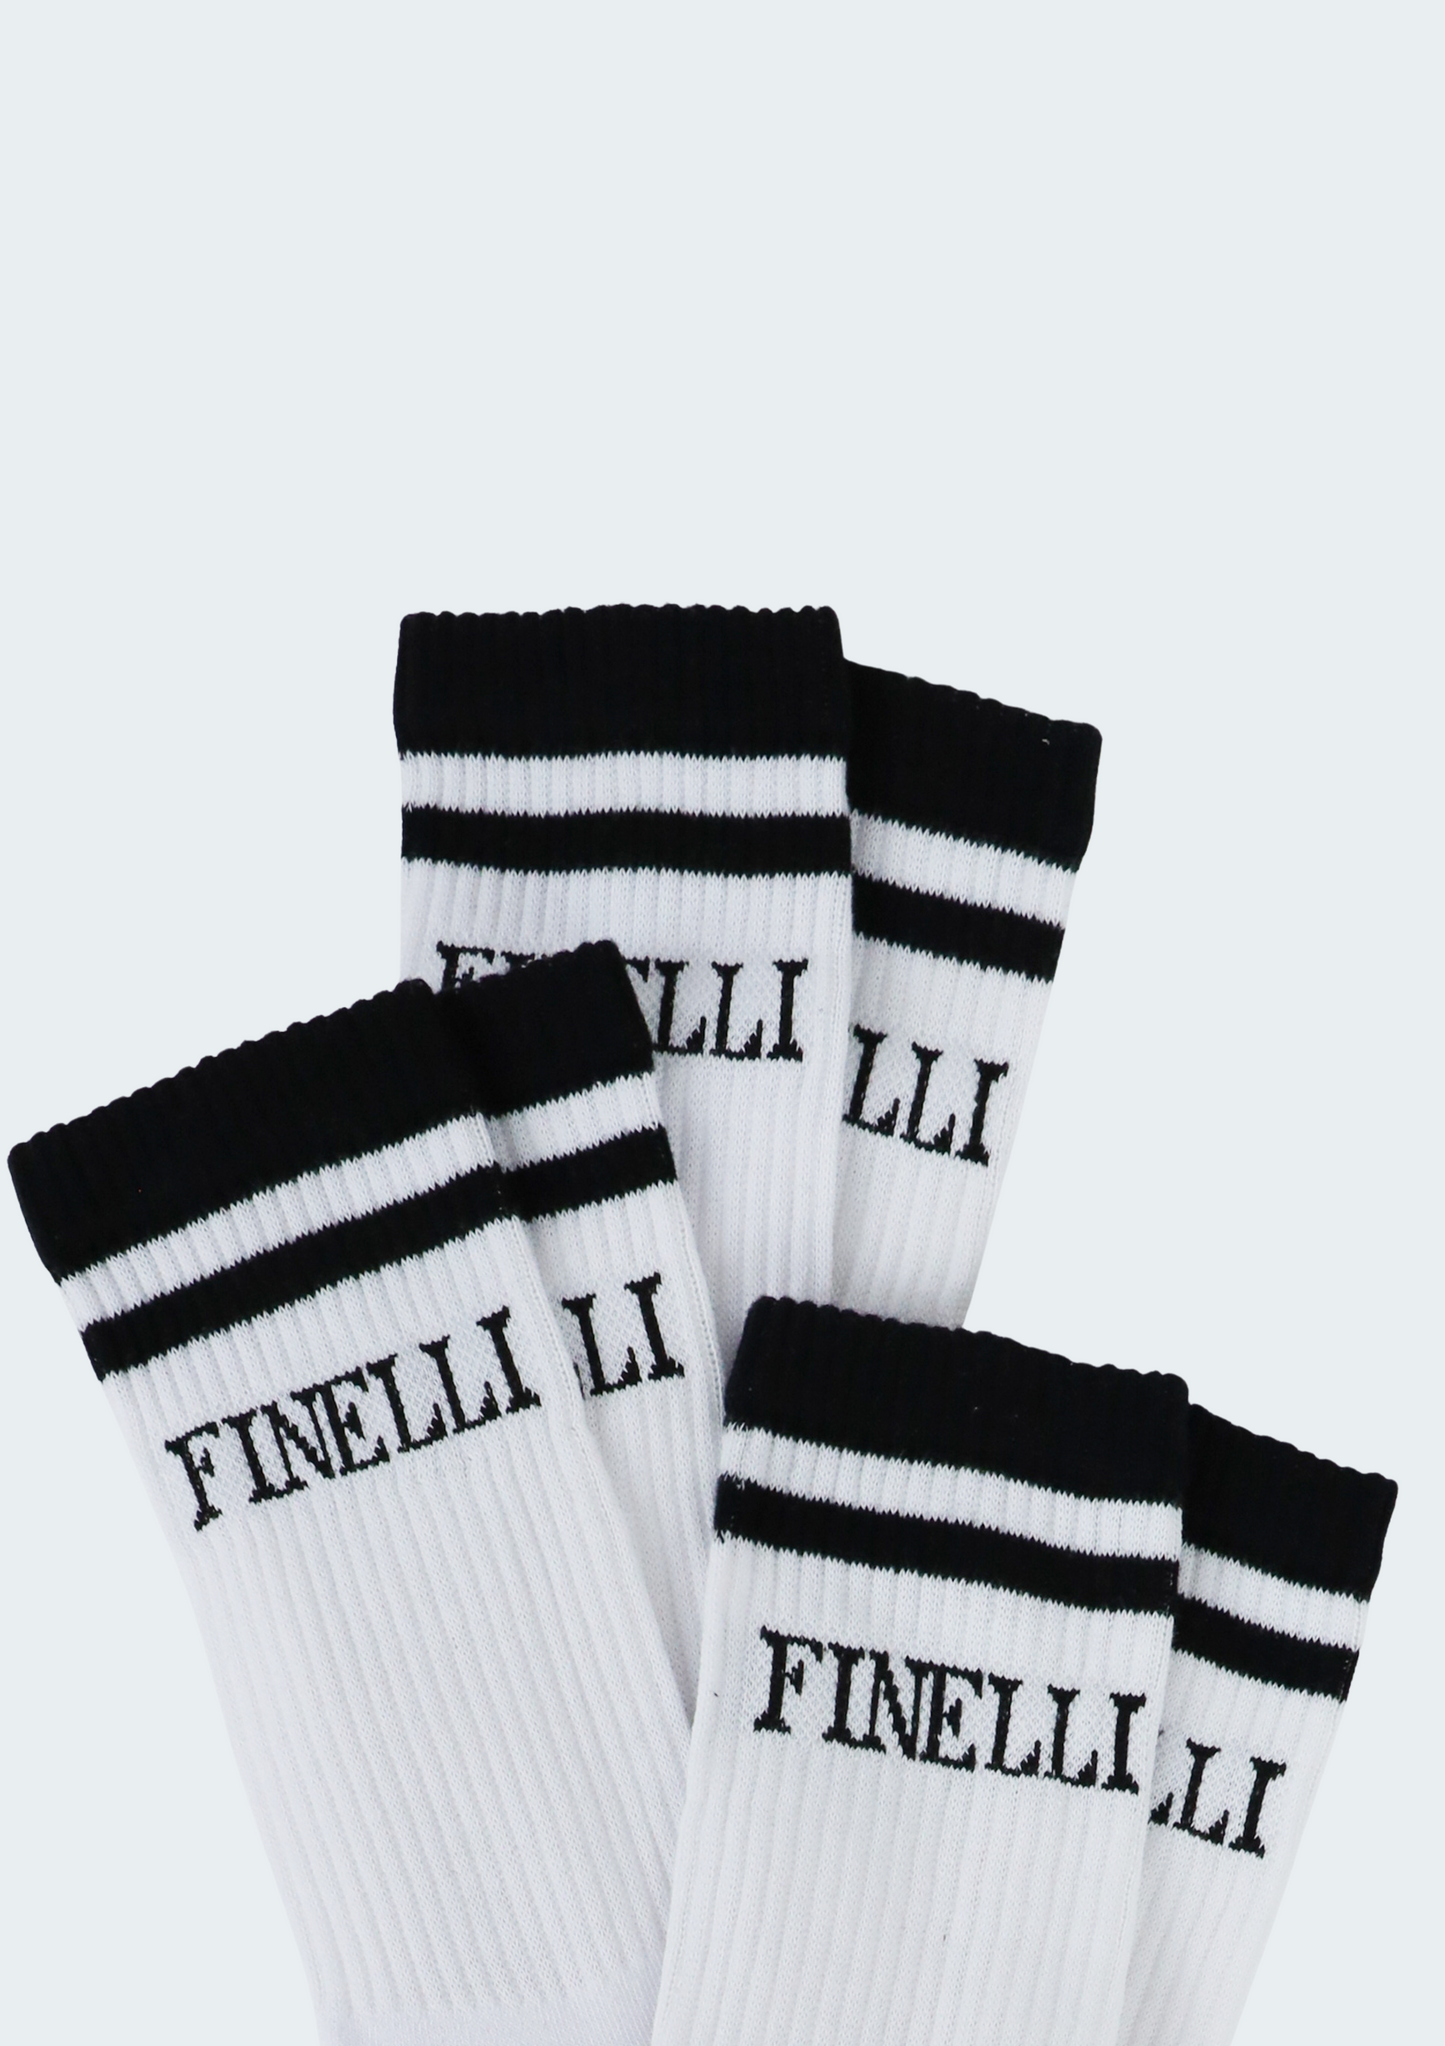 FINELLI Tennissocks - Finelli